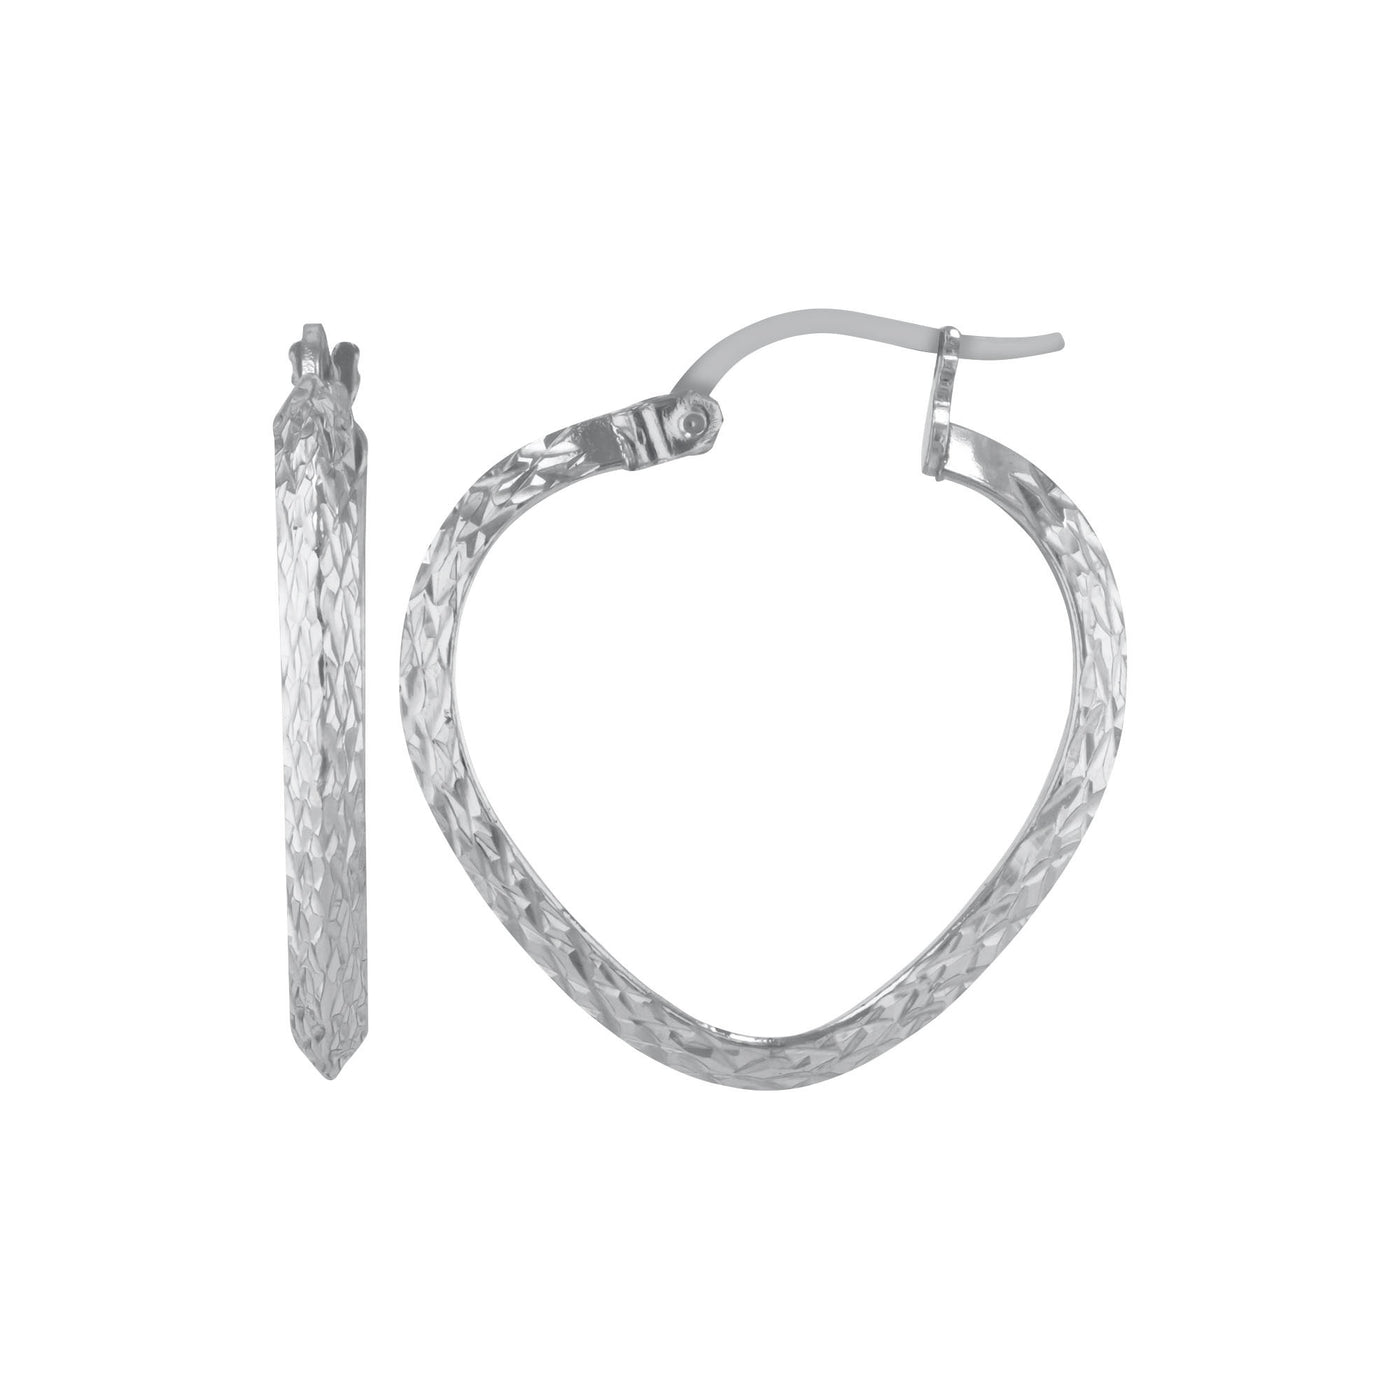 Sterling Silver 2.5mmx20mm Triangle Tube Heart Shaped Diamond Cut Earrings